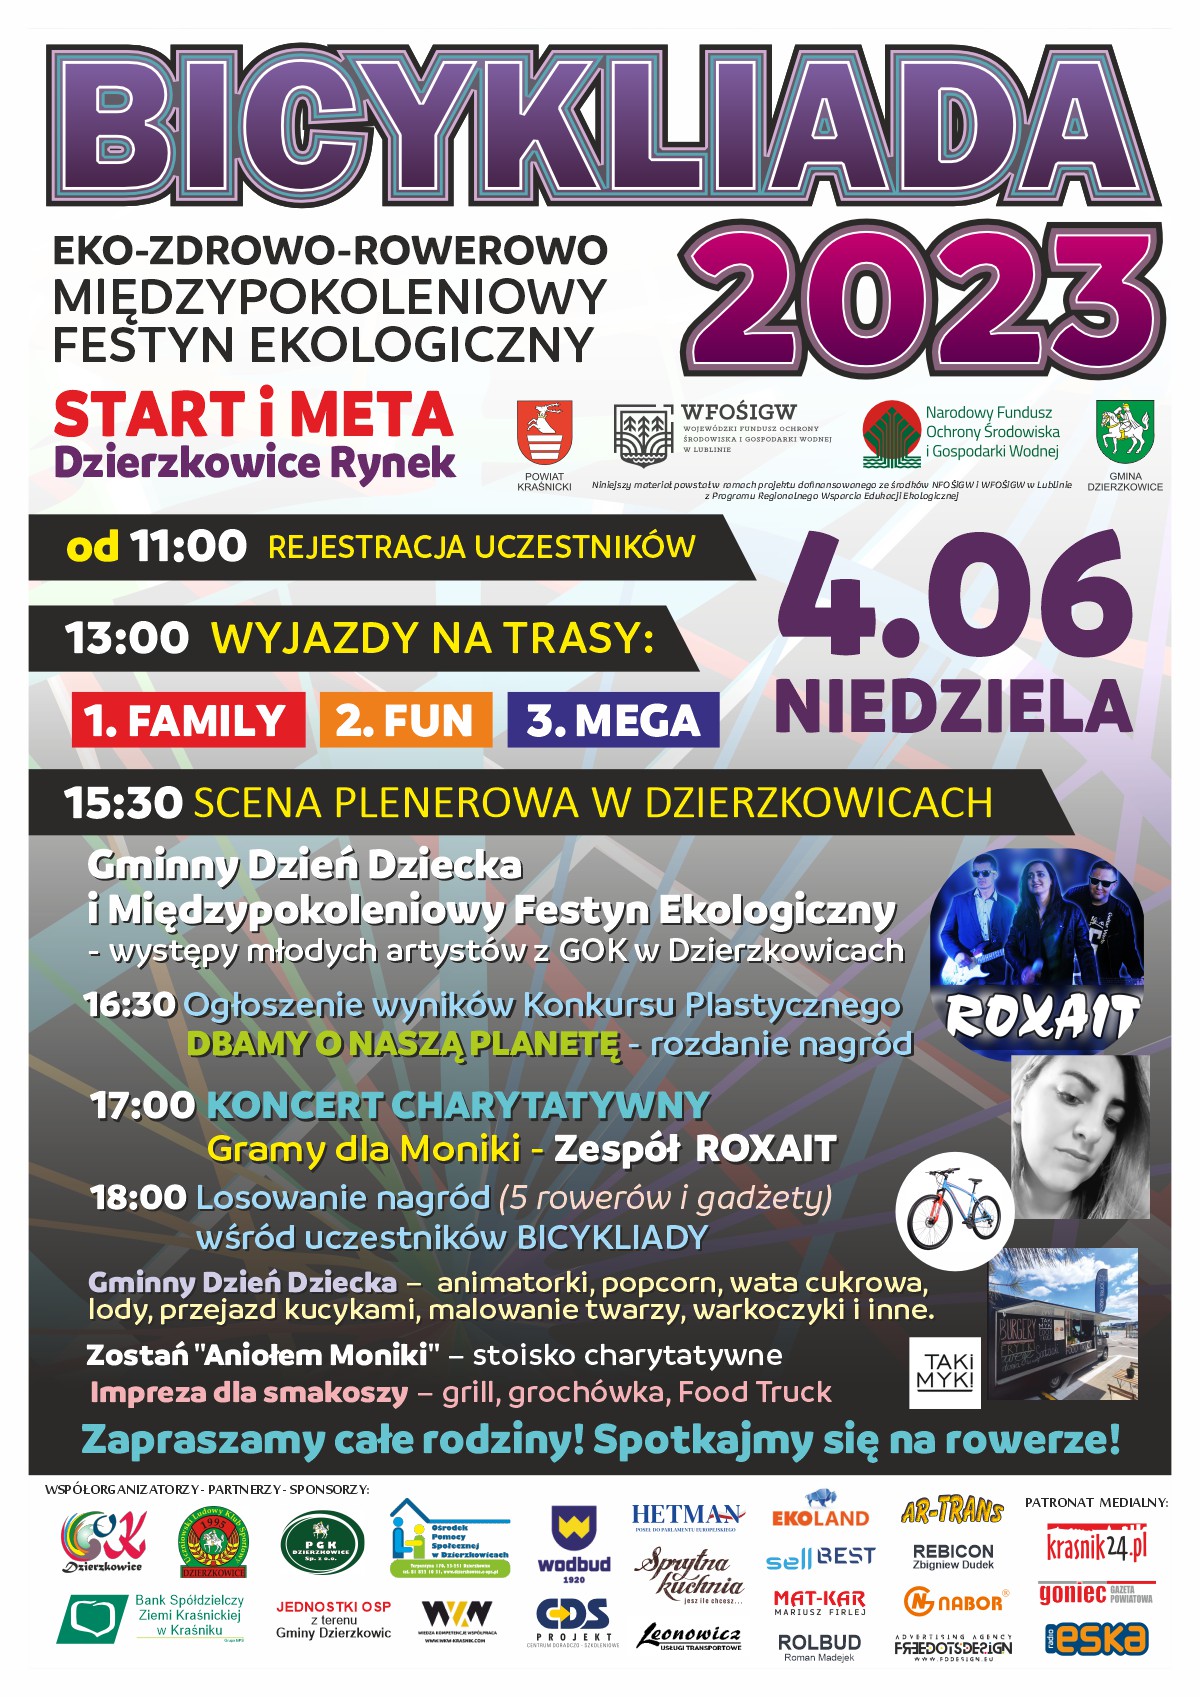 BICYKLIADA 2023 EKO-ZDROWO-ROWEROWO MIĘDZYPOKOLENIOWY FESTYN EKOLOGICZNY